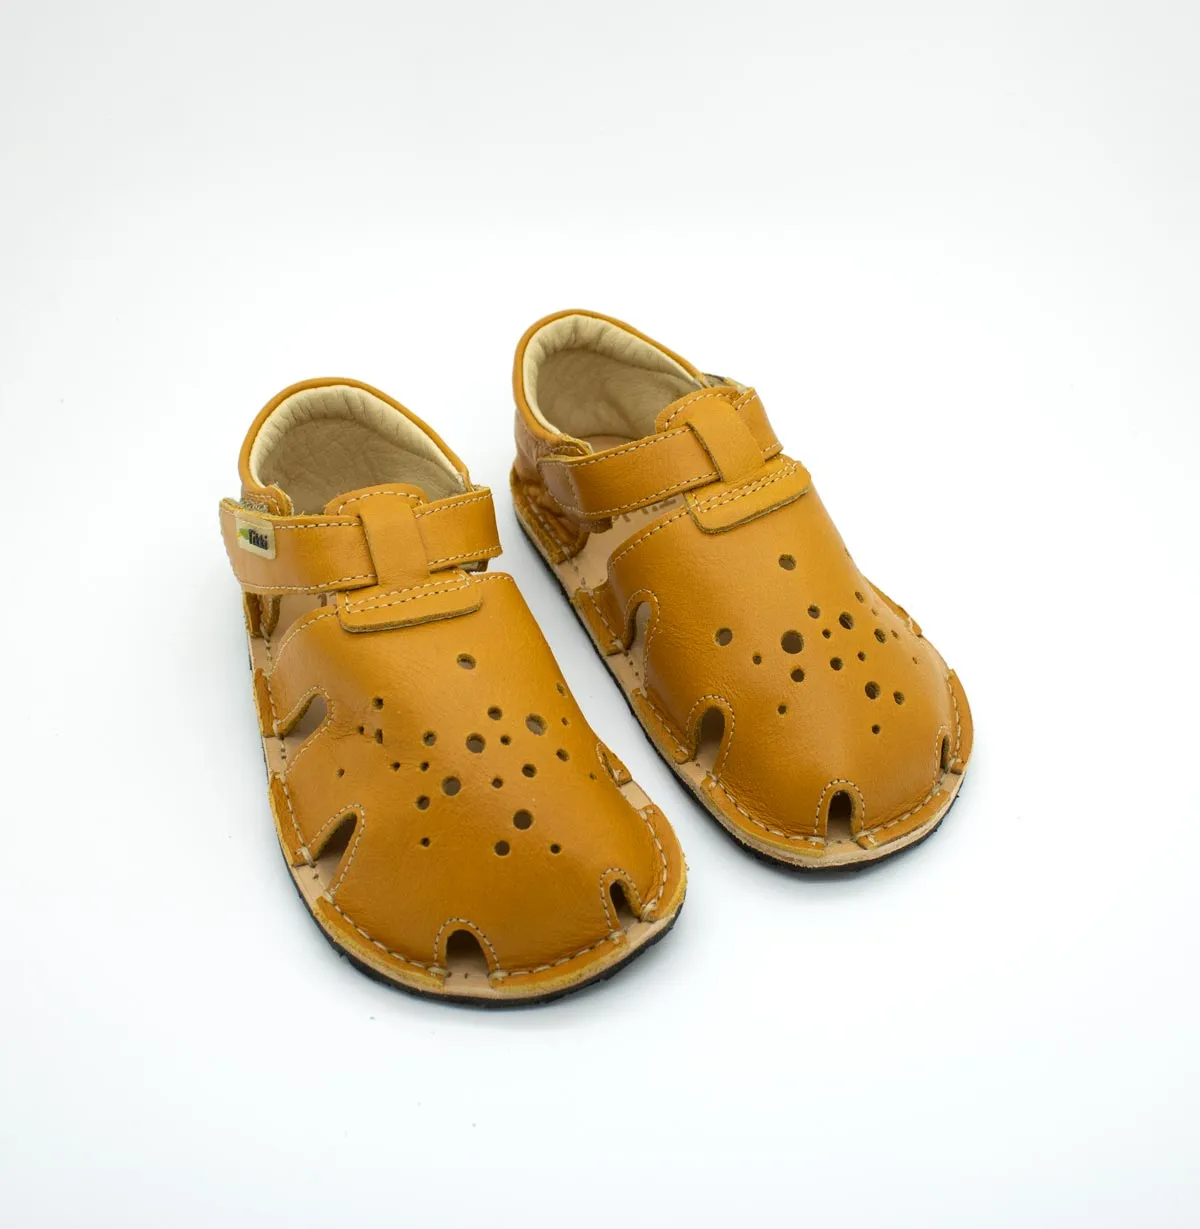 Tikki Mariposa Leather sandaalid, Lollipop Laste barefoot jalatsid - HellyK - Kvaliteetsed lasteriided, villariided, barefoot jalatsid